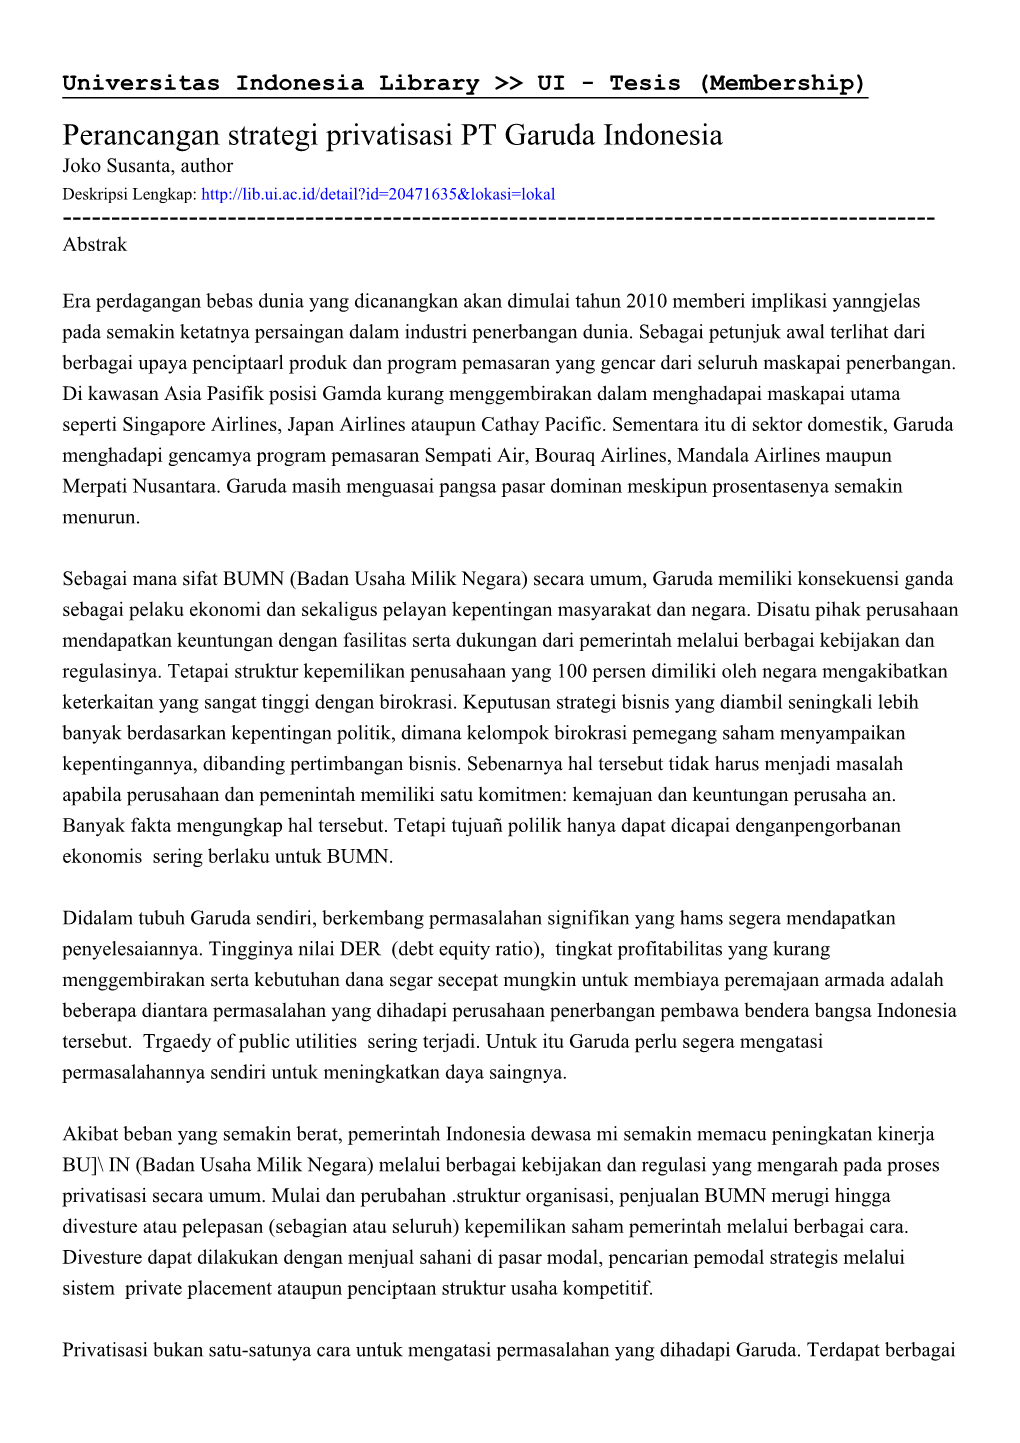 Perancangan Strategi Privatisasi PT Garuda Indonesia Joko Susanta, Author Deskripsi Lengkap: ------Abstrak